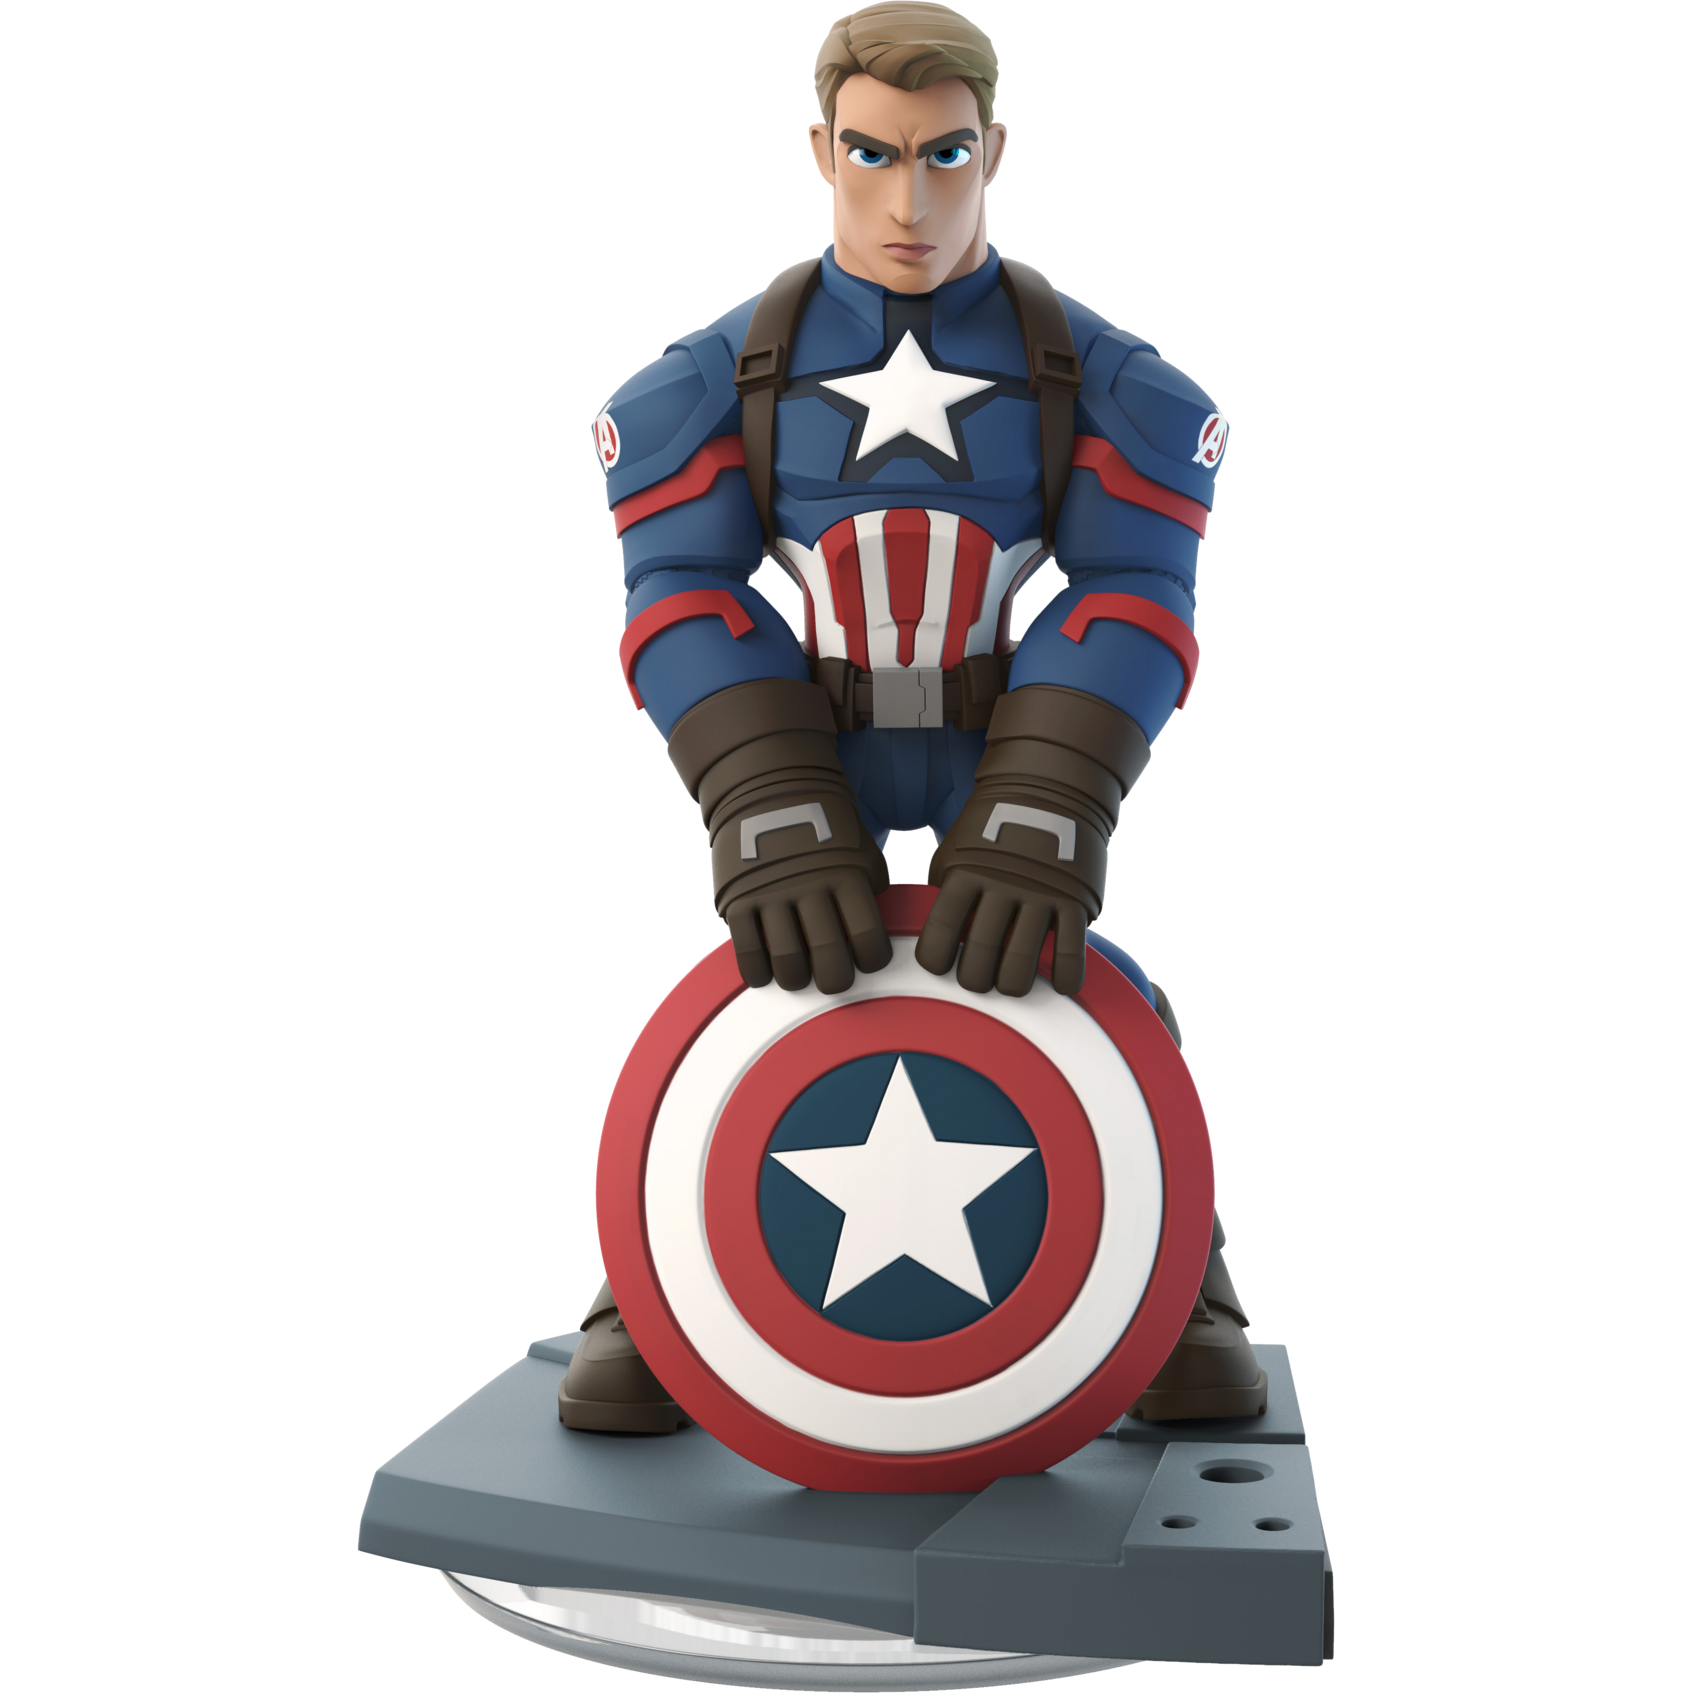 Disney Infinity 3.0 - Captain America First Avenger Figure